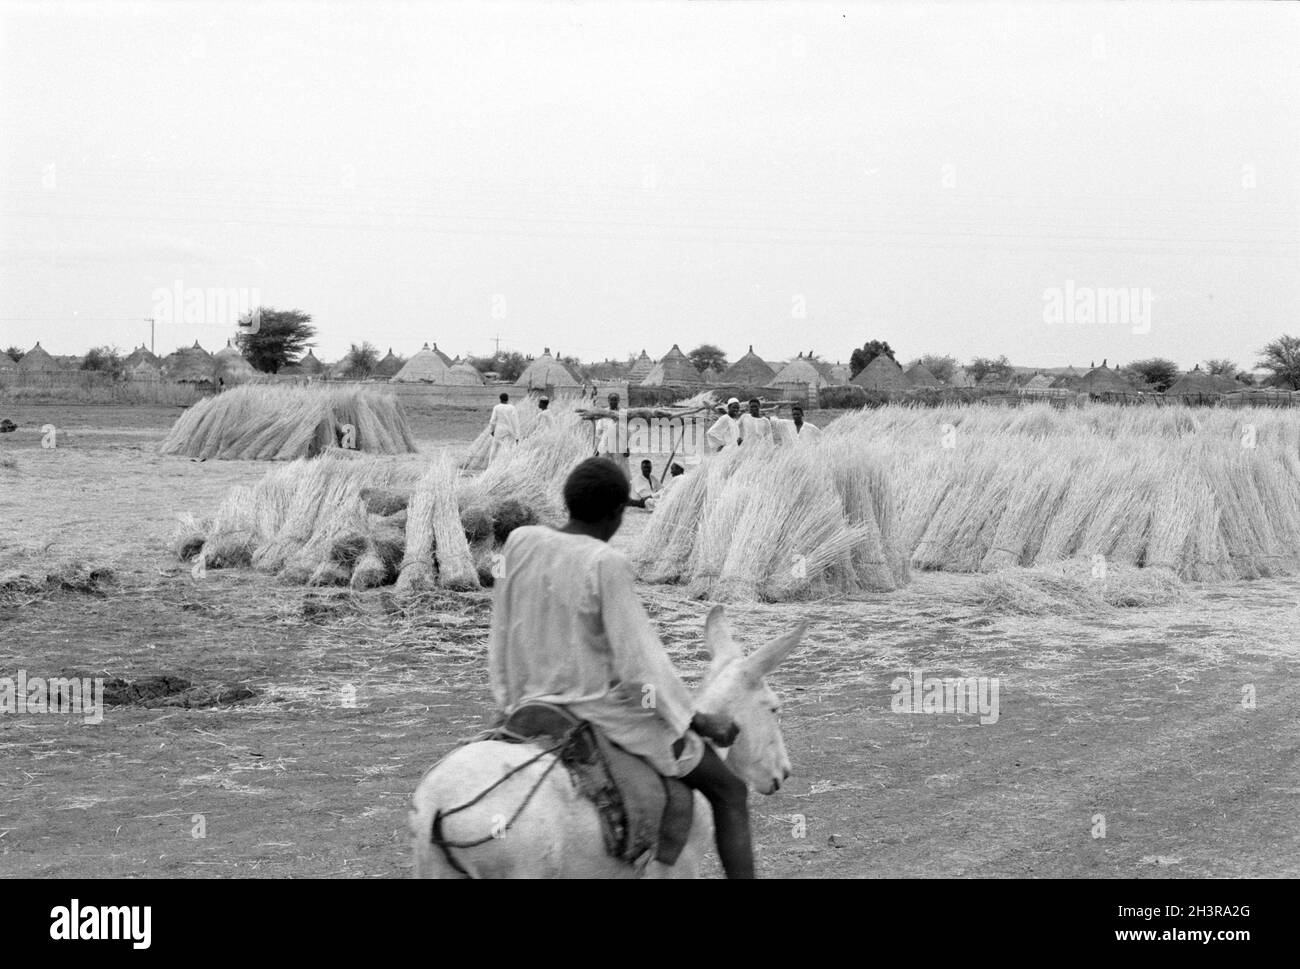 Africa, Sudan, nei pressi di Wad Madani 1976. Pile di canne o paglia sono stati utilizzati per tetti e pareti di capanne e case in un nuovo villaggio alla periferia della città. Situato accanto alla ferrovia. Un bot che guida un asino. Foto Stock